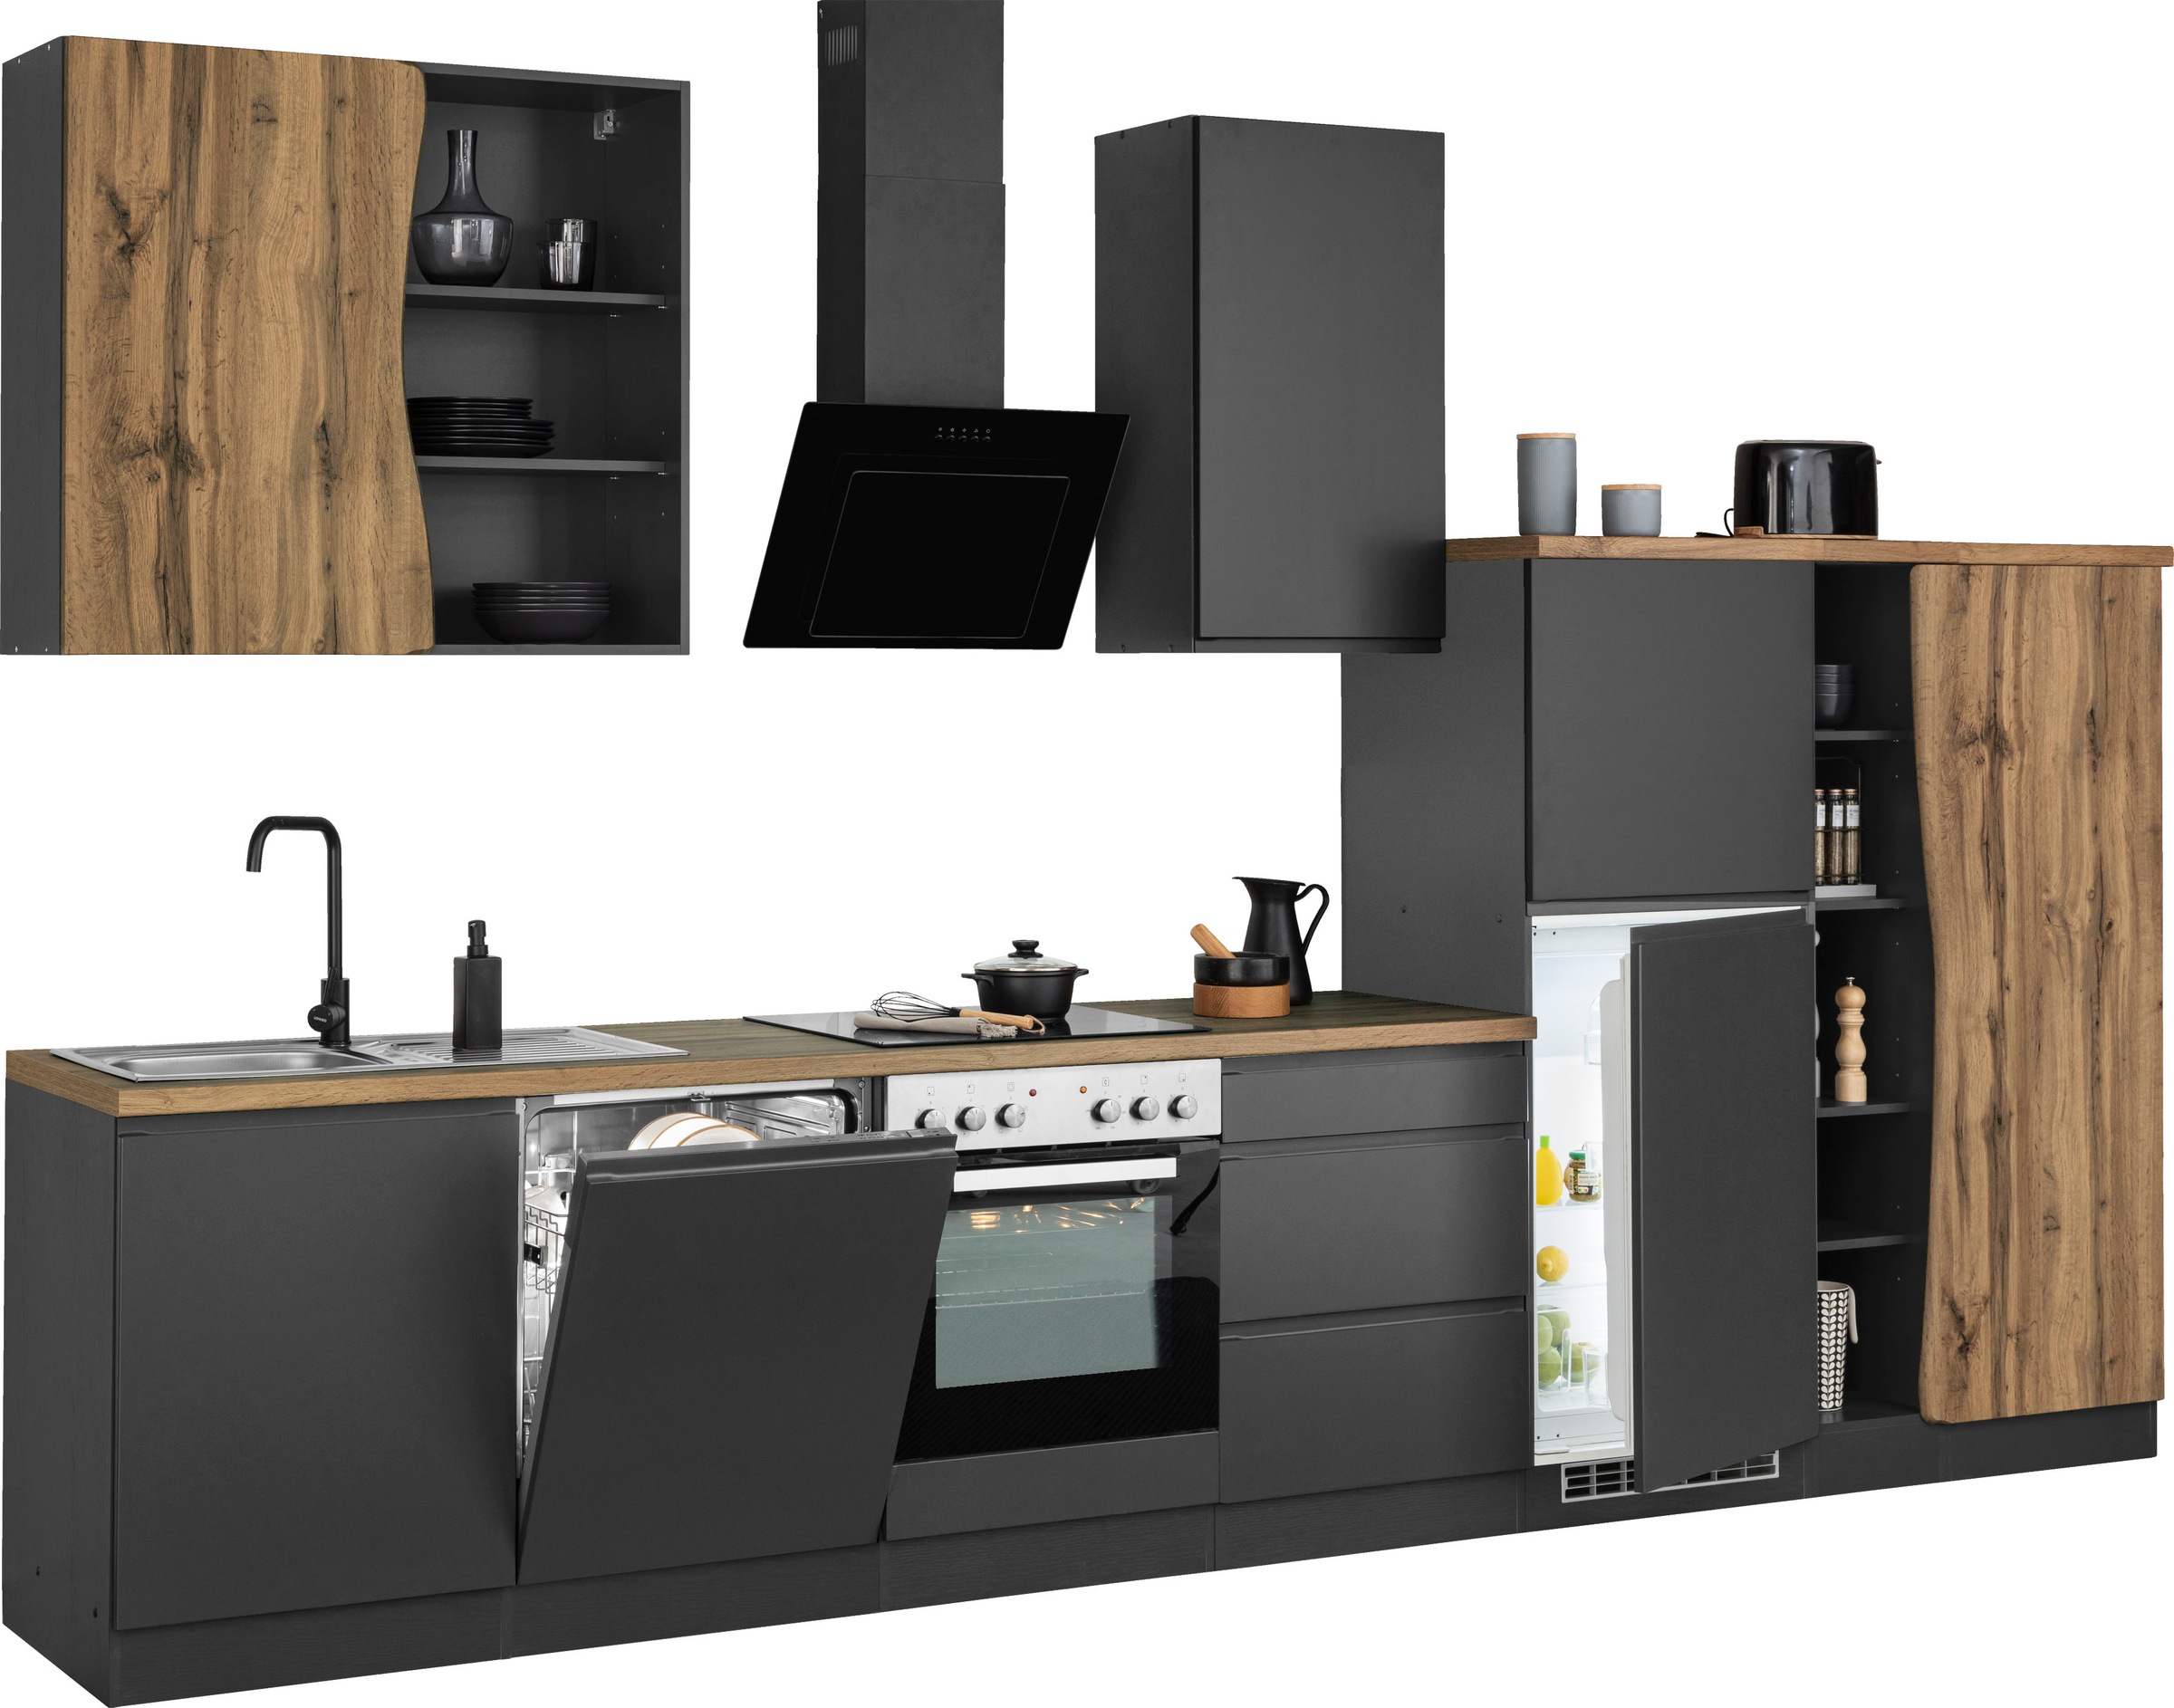 HELD MÖBEL Küche »Bruneck«, 380cm breit, wahlweise mit oder ohne E-Geräte,  hochwertige MDF-Fronten kaufen bei OTTO